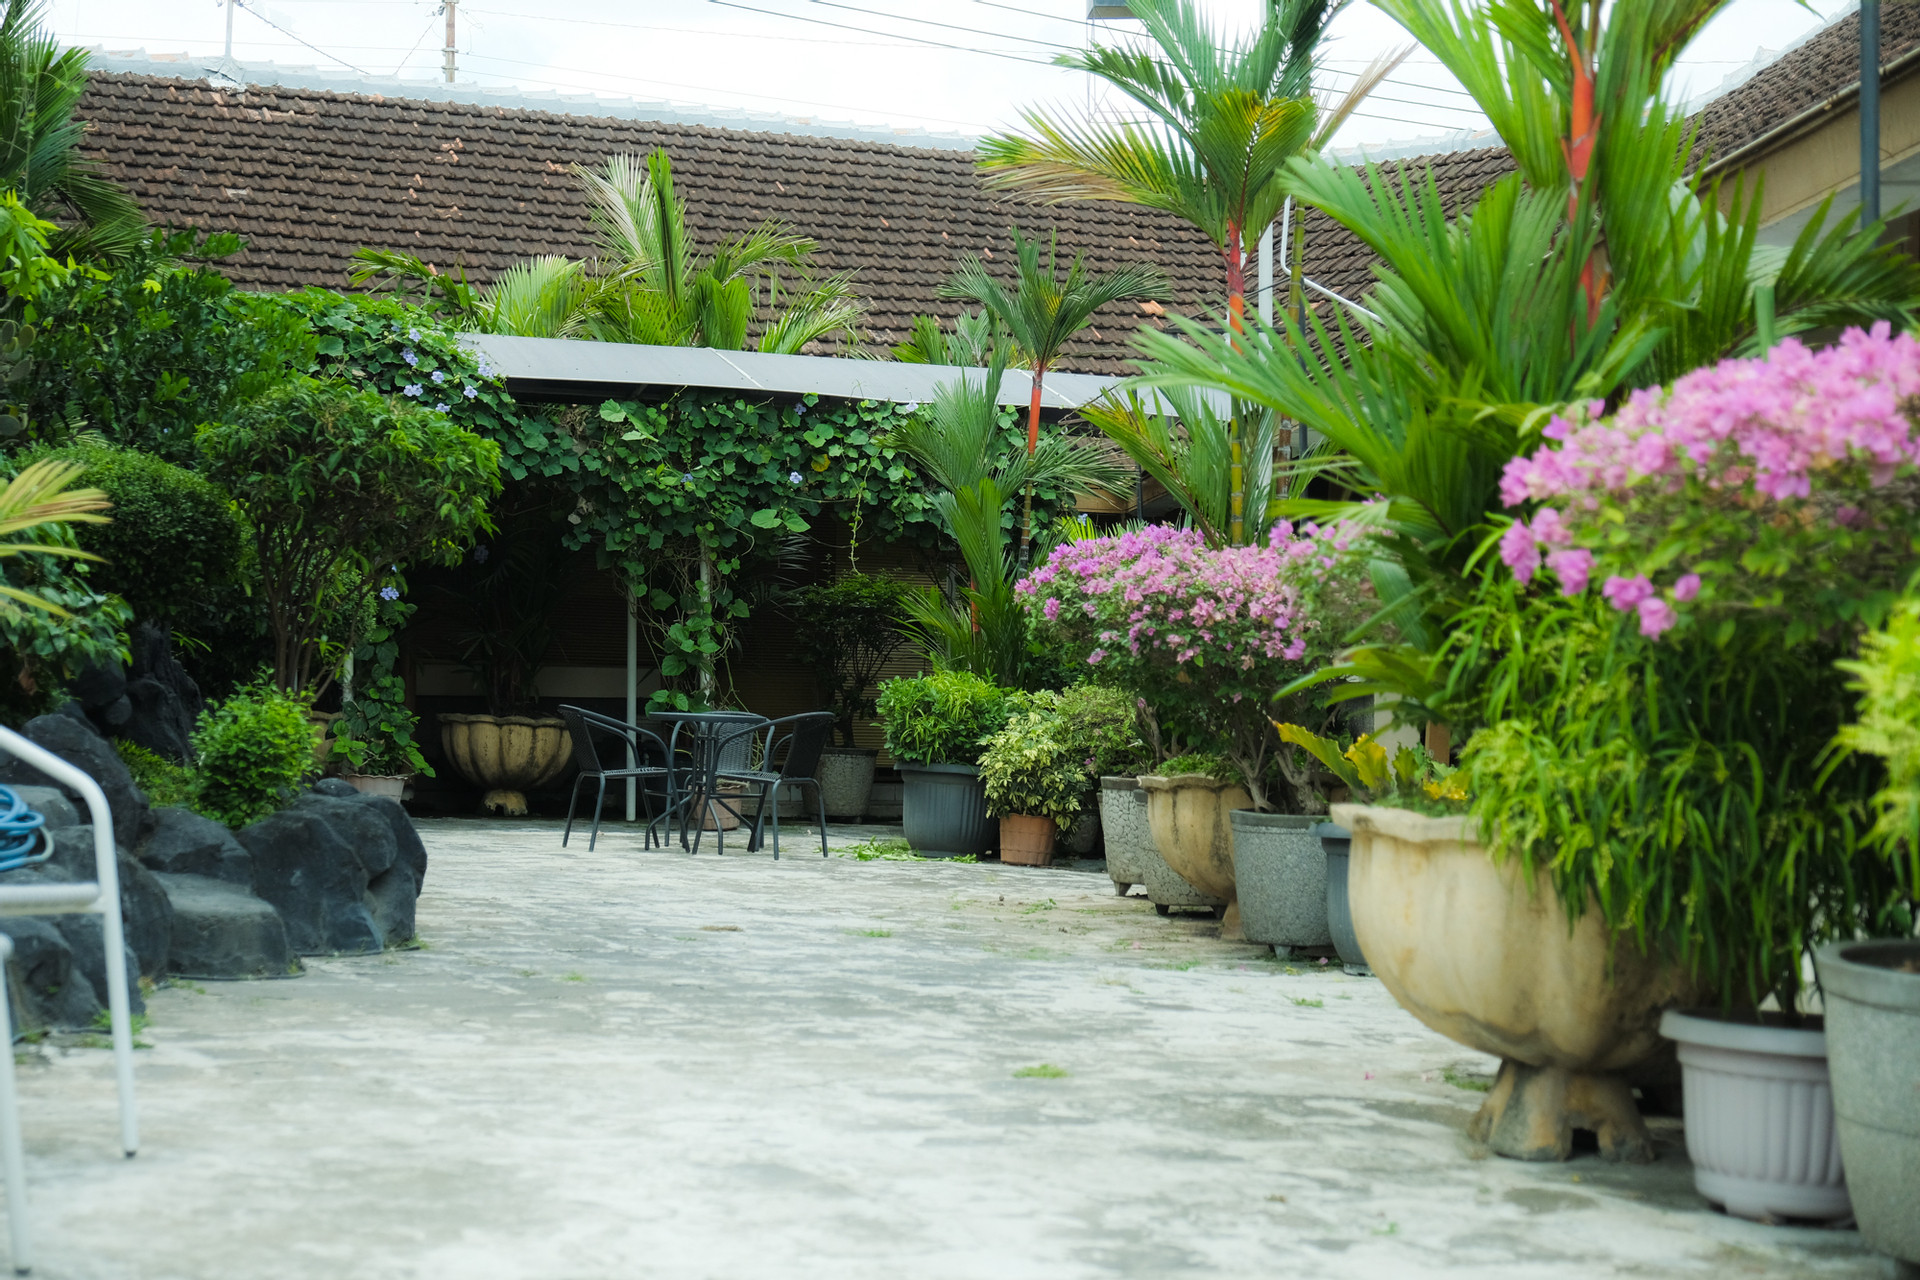 Exterior & Views 5, Hotel Maerakatja Yogyakarta, Yogyakarta